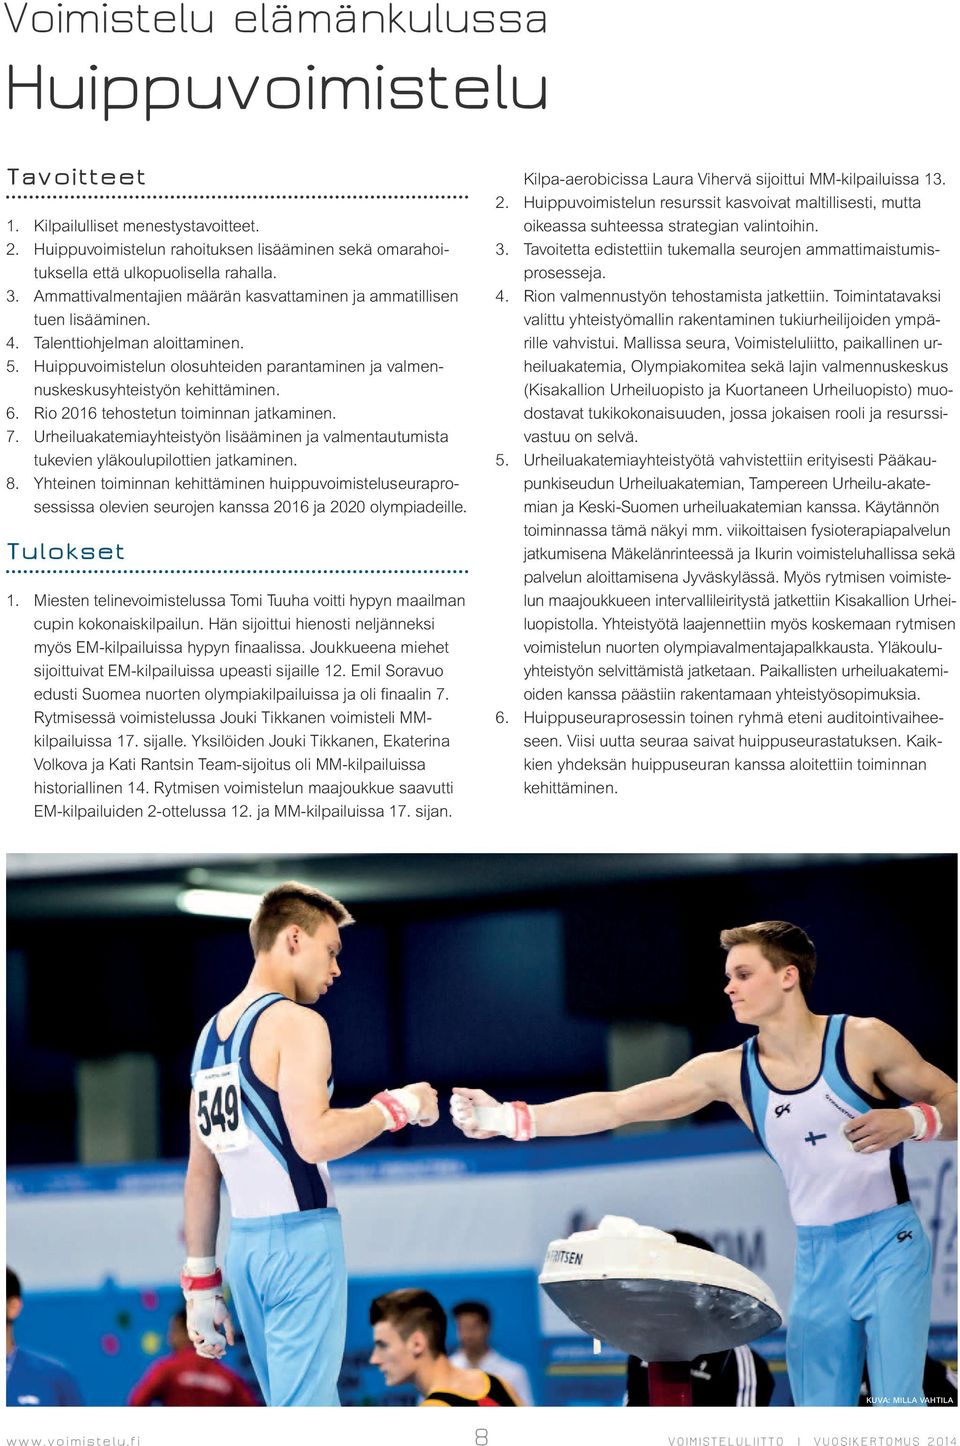 Rio 2016 tehostetun toiminnan jatkaminen. 7. Urheiluakatemiayhteistyön lisääminen ja valmentautumista tukevien yläkoulupilottien jatkaminen. 8.